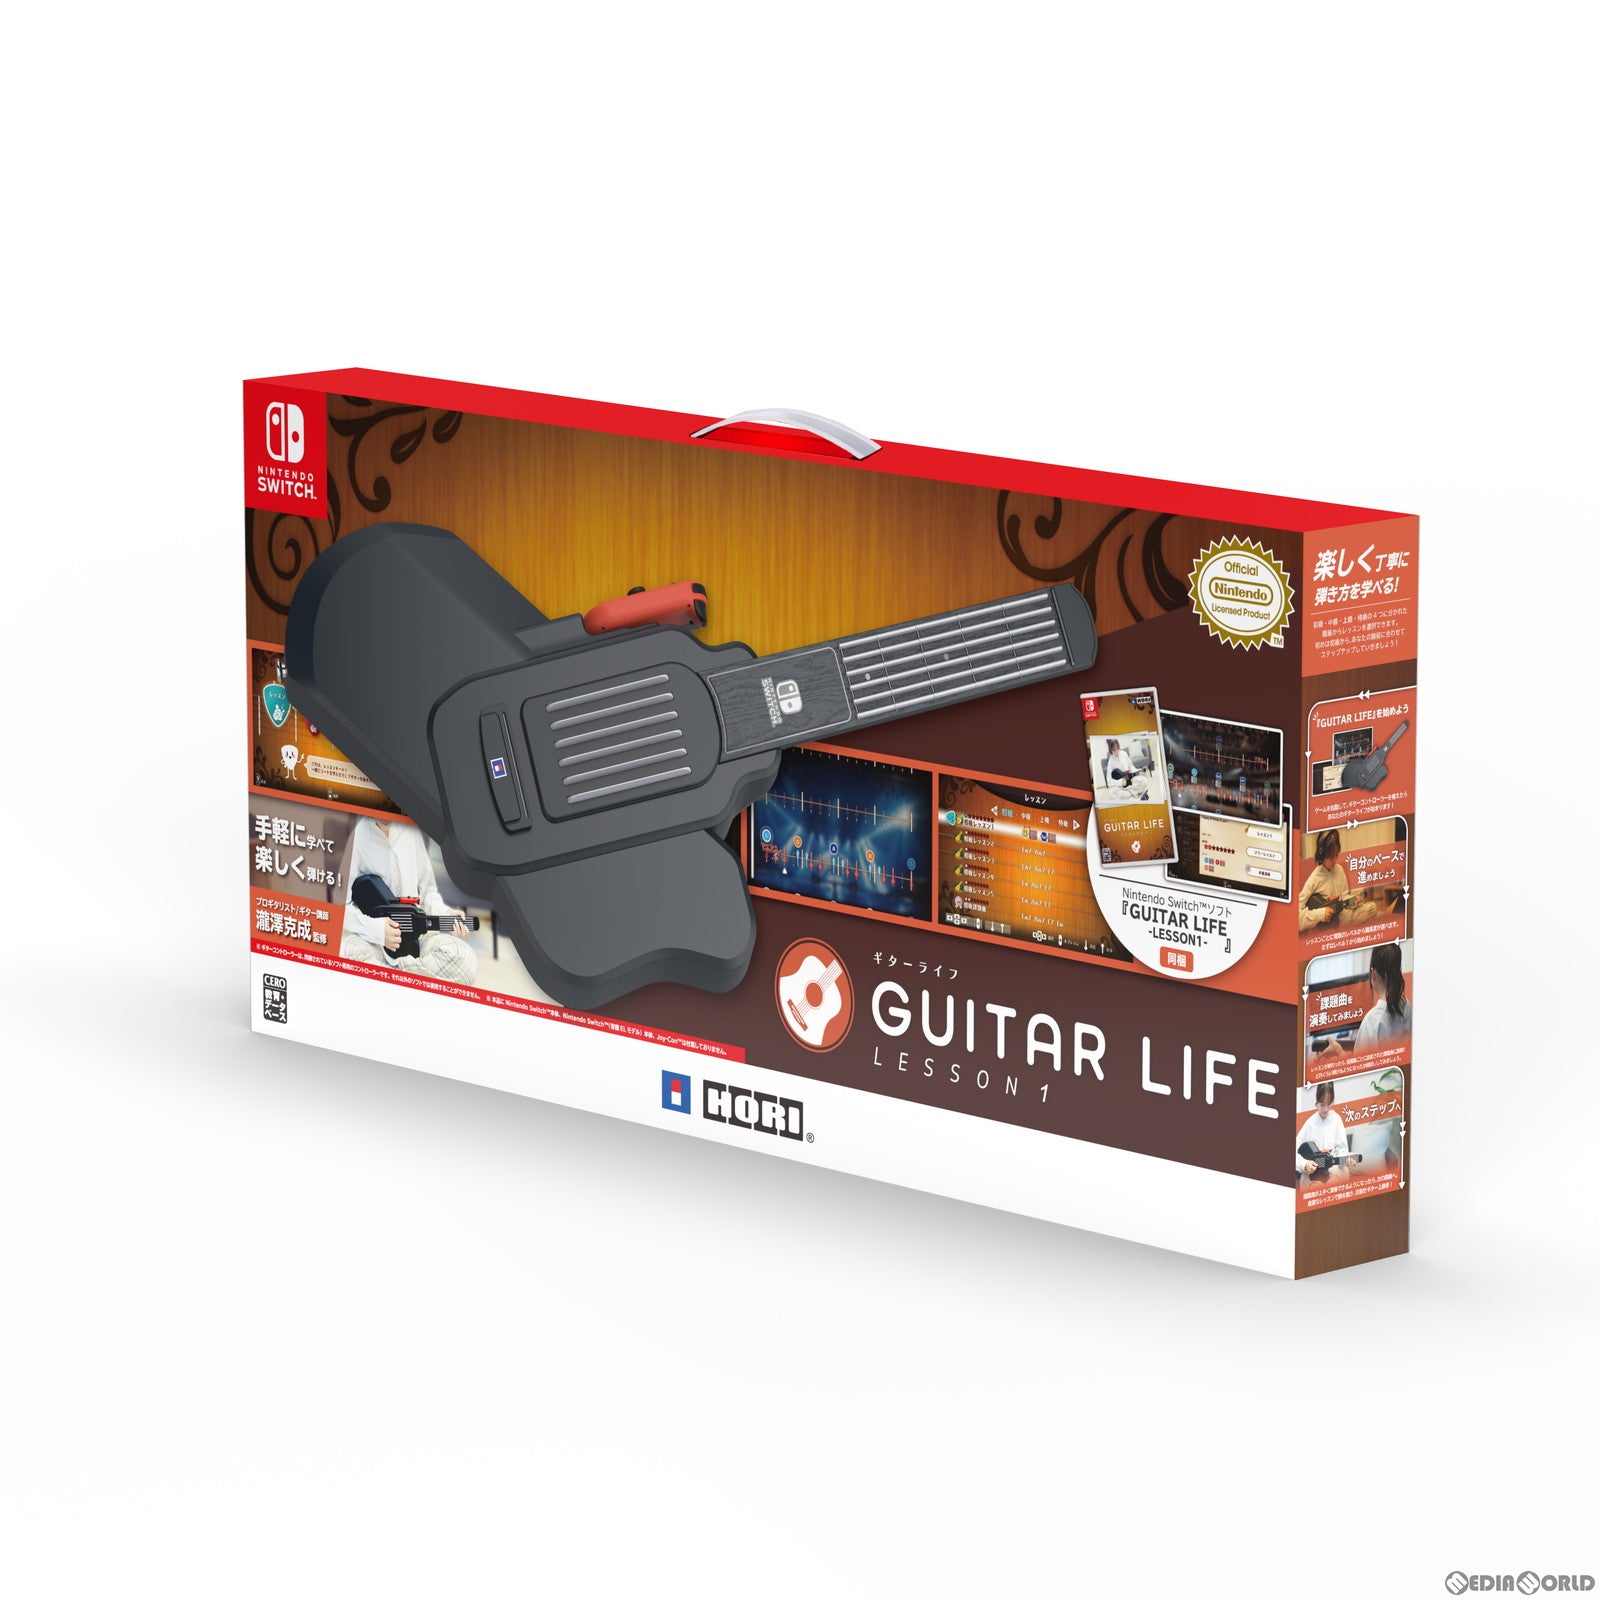 【新品】【お取り寄せ】[Switch]GUITAR LIFE Lesson1 for Nintendo Switch(ギターライフ レッスン1 フォー ニンテンドースイッチ) 専用ギターコントローラー同梱(20240425)